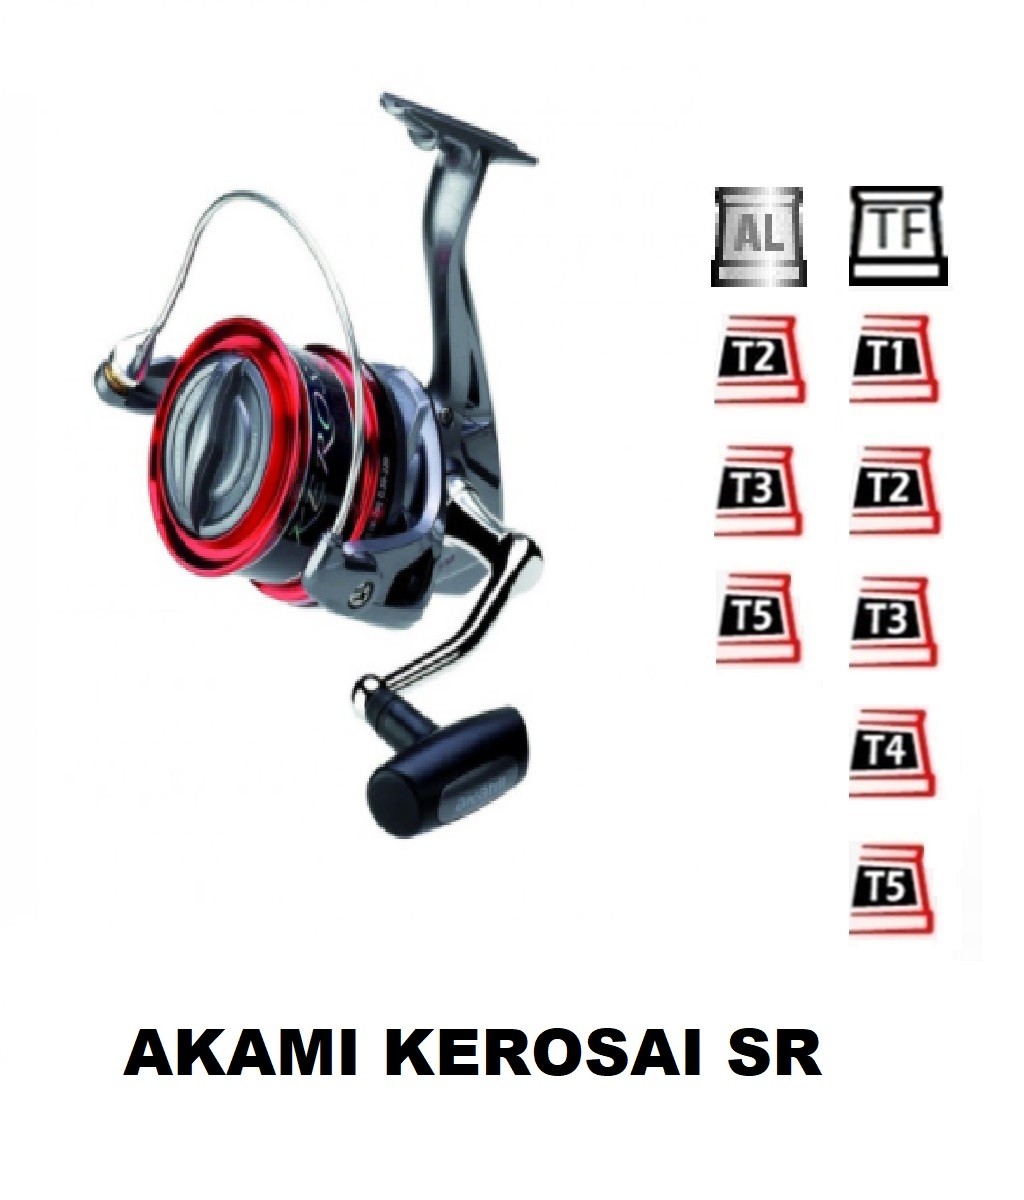 Ersatzpule kompatible mit Akami Kerosai SR